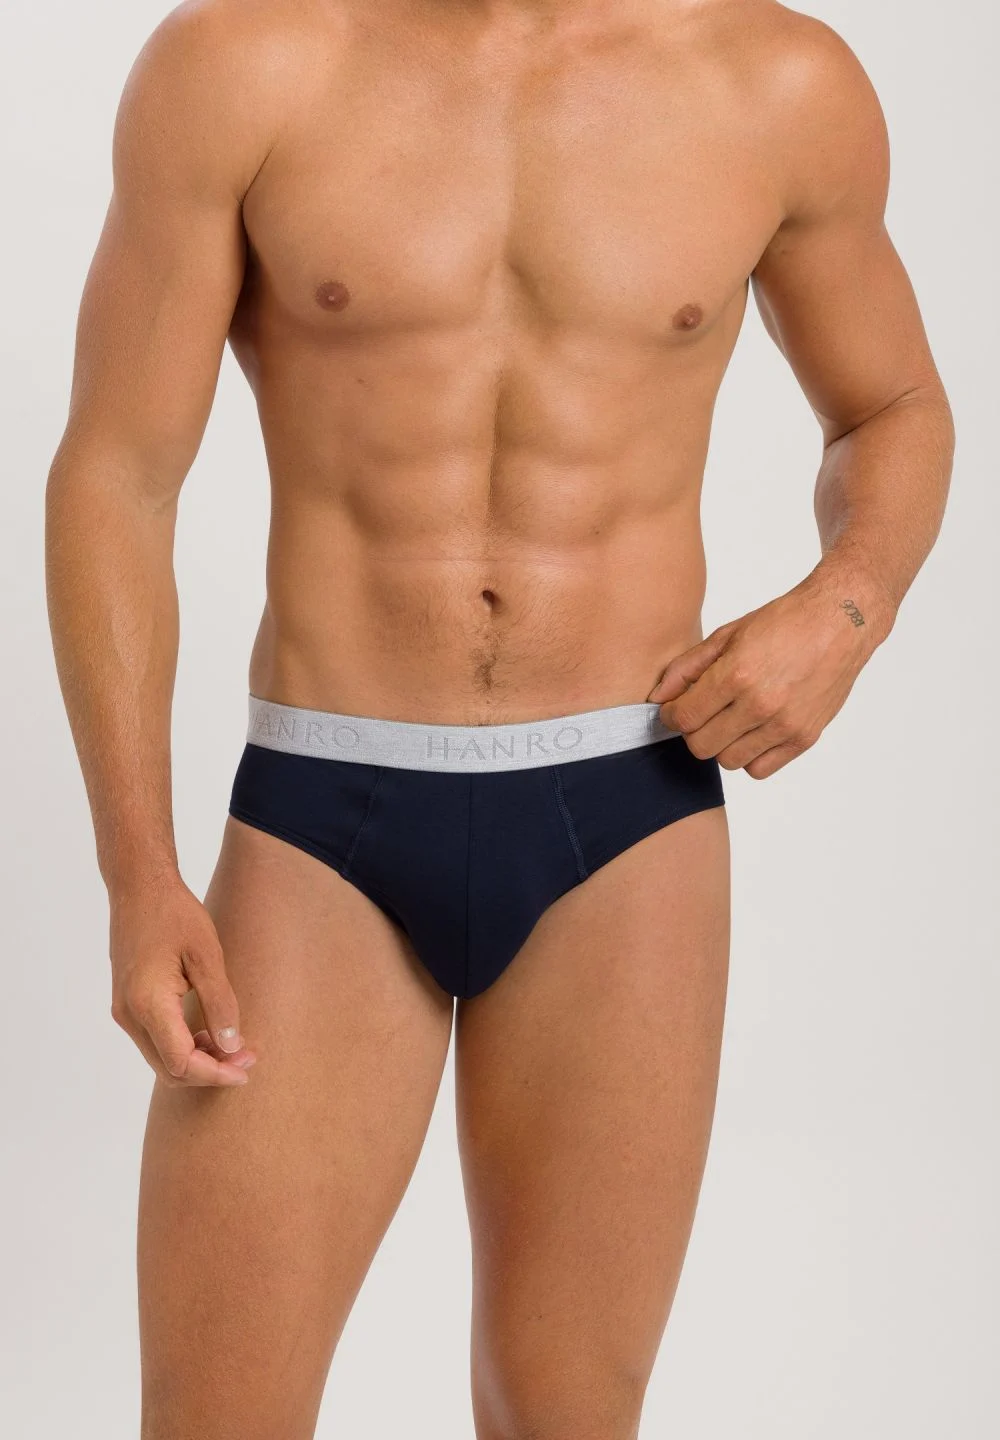 Sexiest Men's Underwear for Valentine's Day